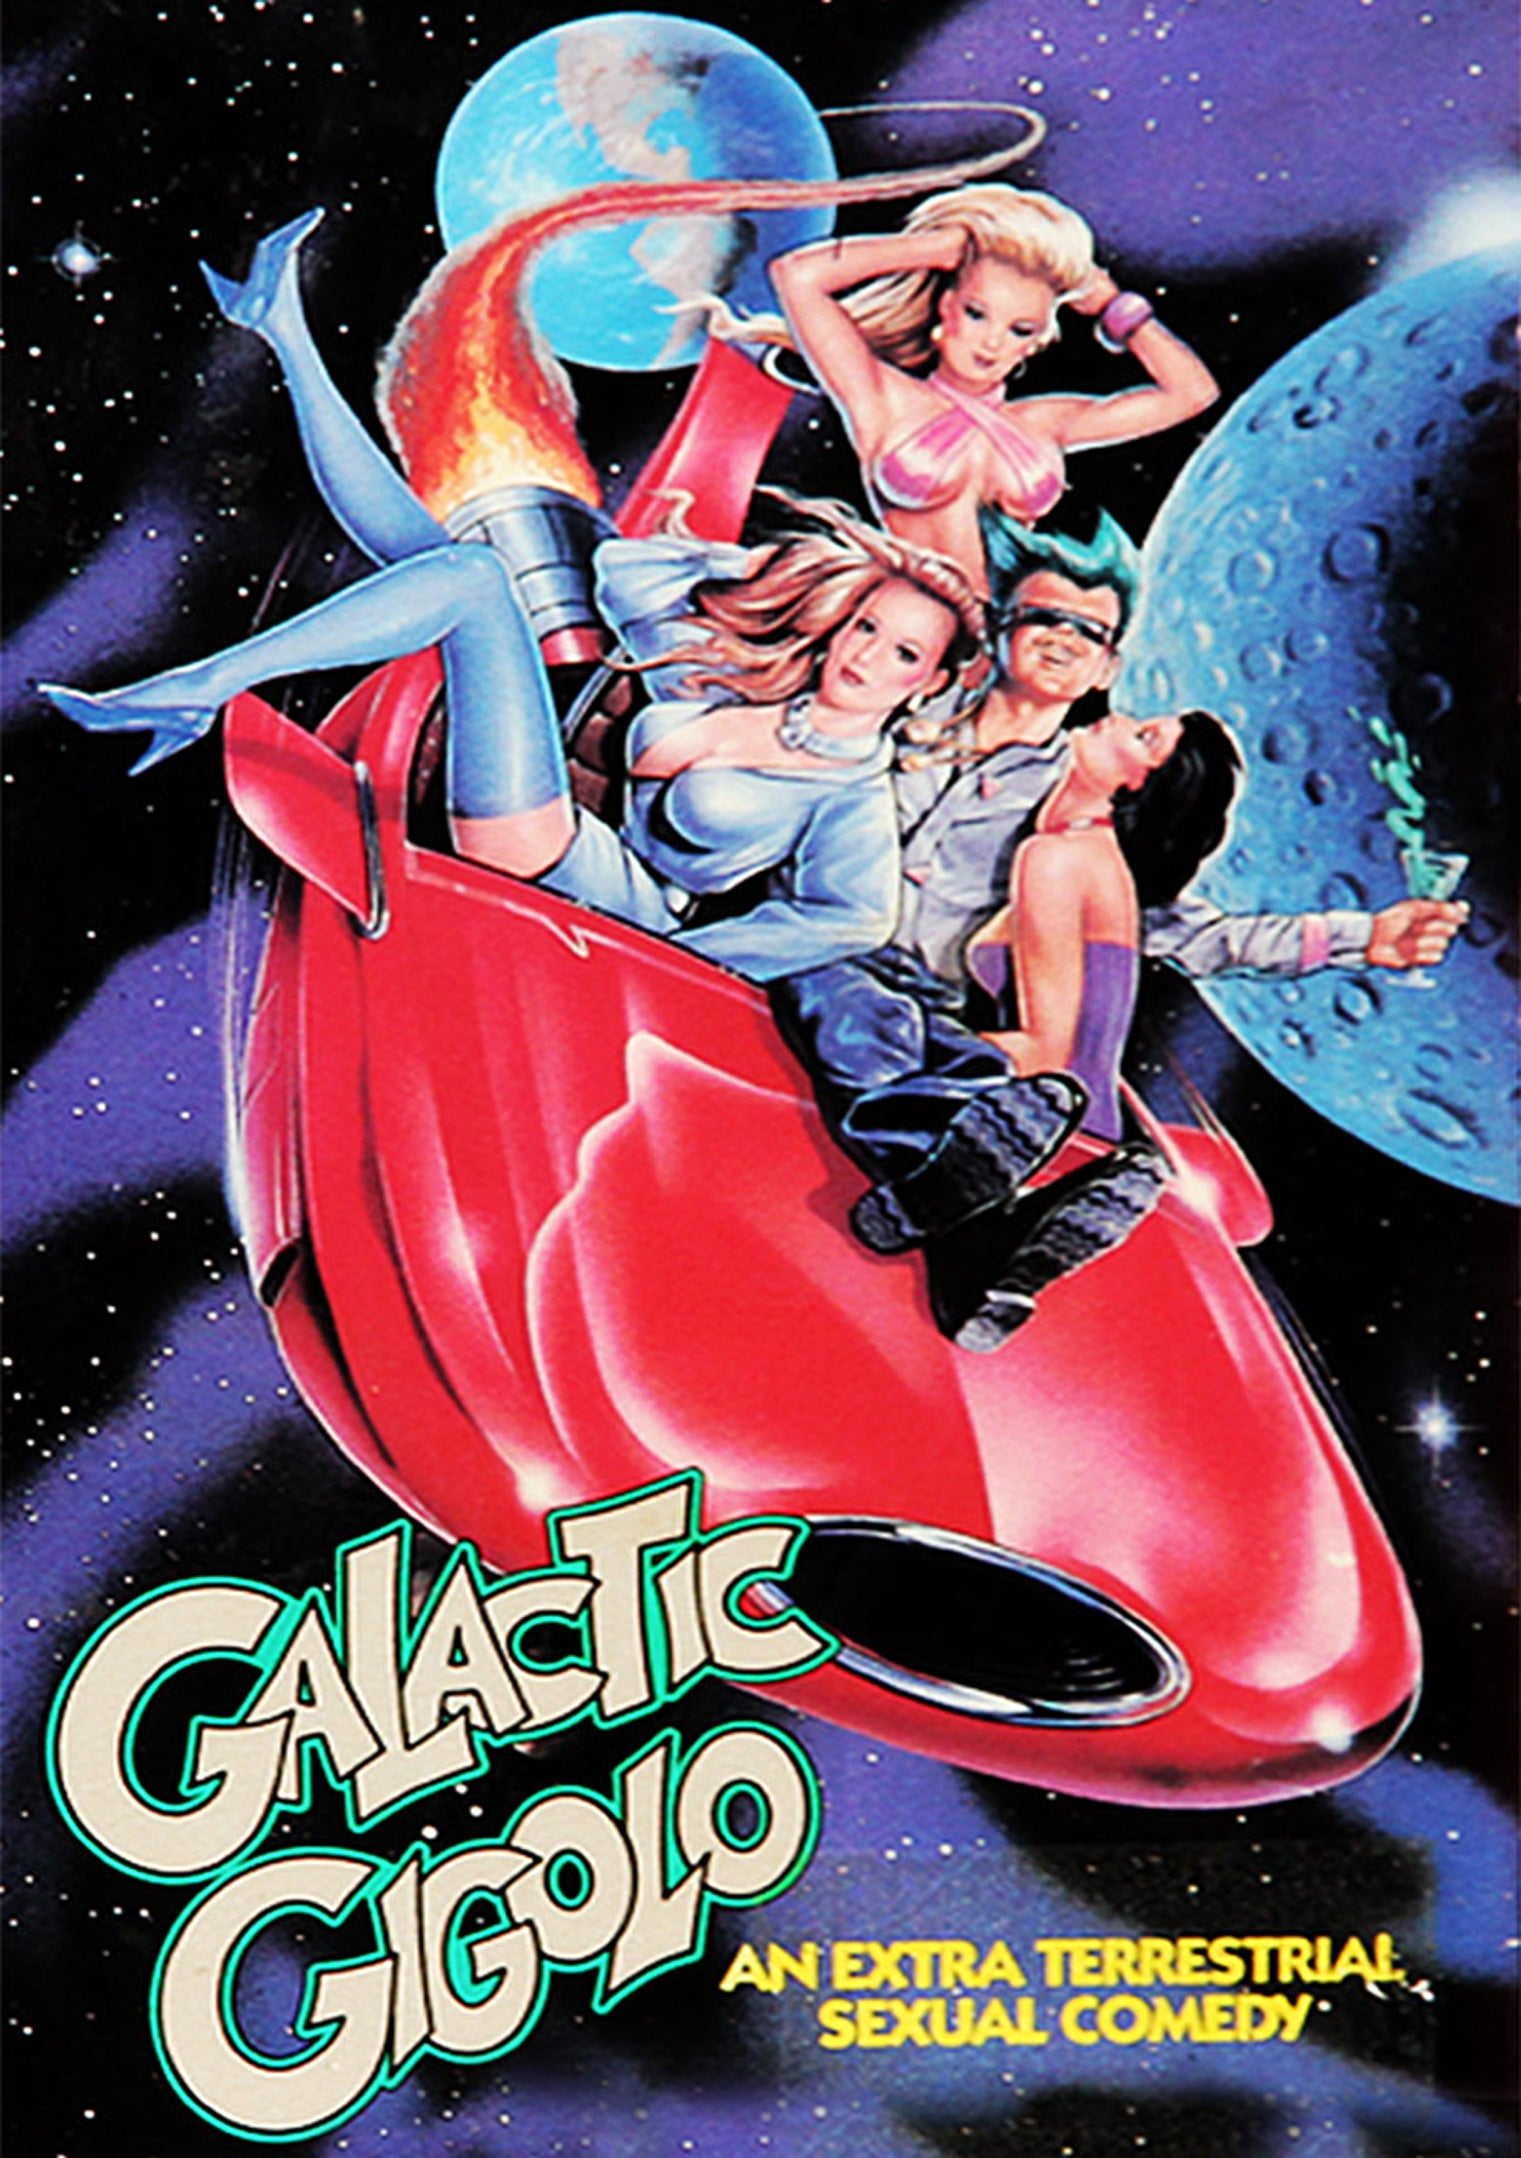 GALACTIC GIGOLO DVD